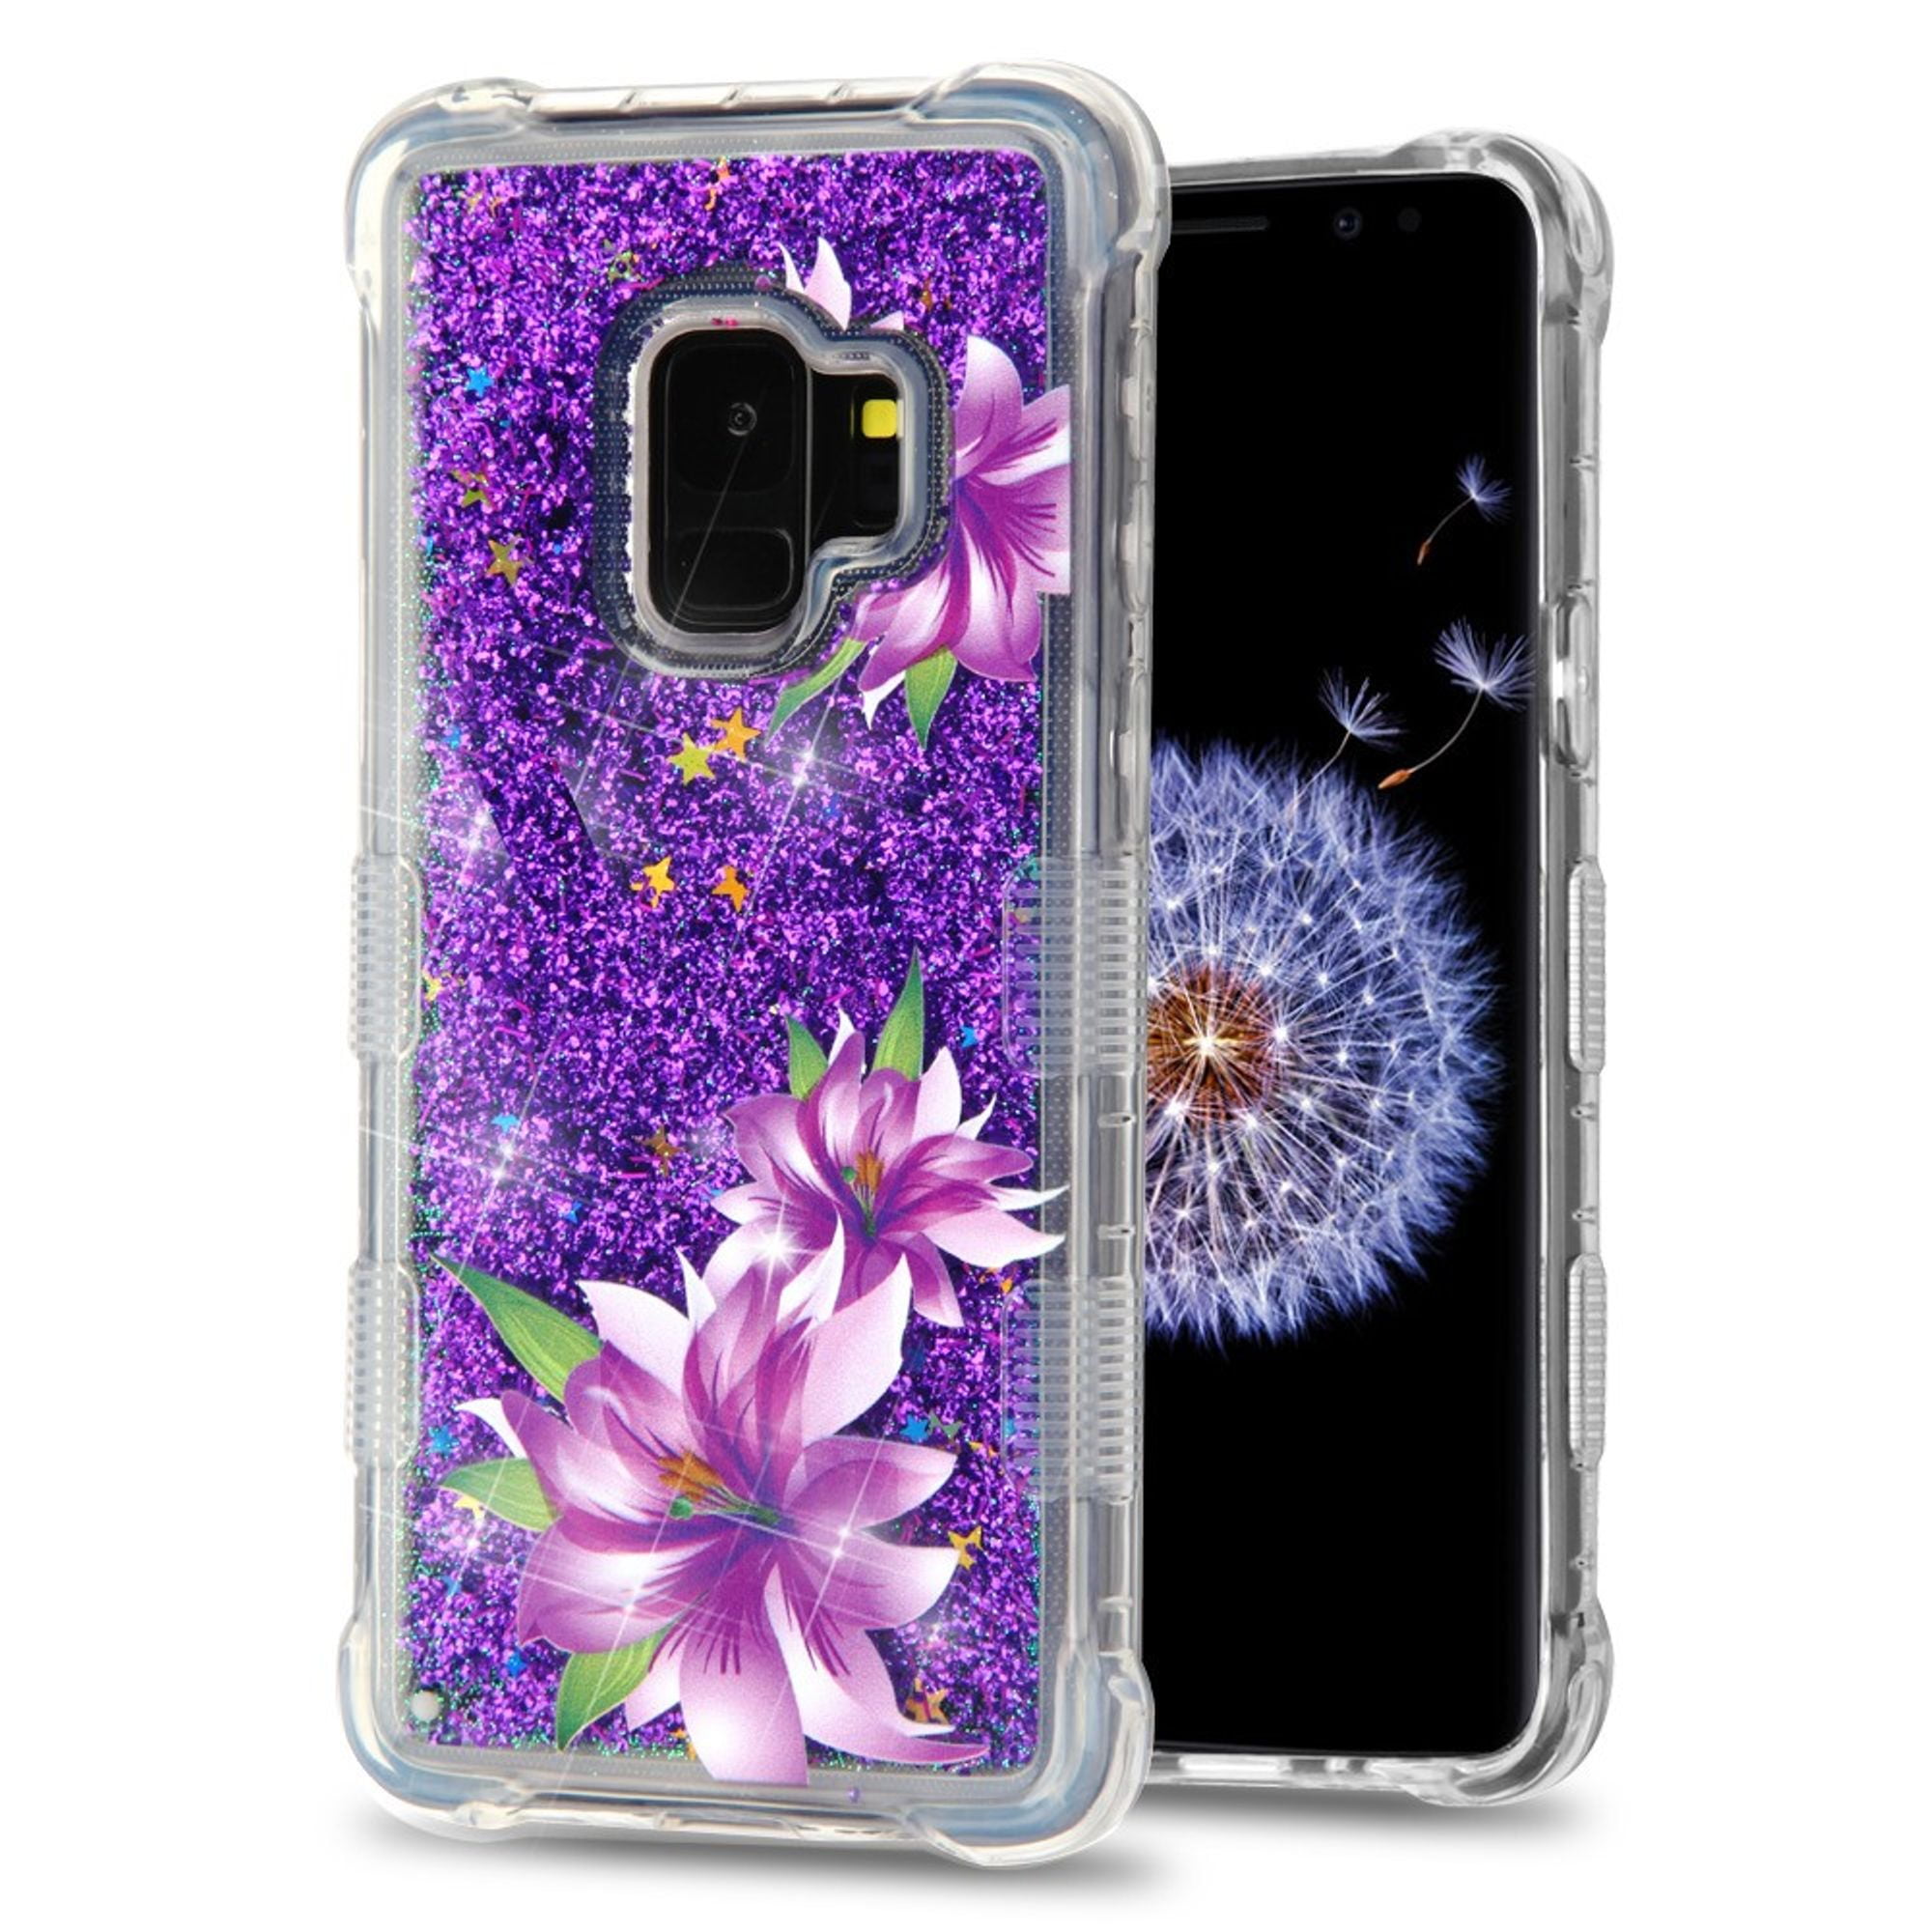 Galaxy S9 case  by Insten Luxury Quicksand  Glitter  Liquid 